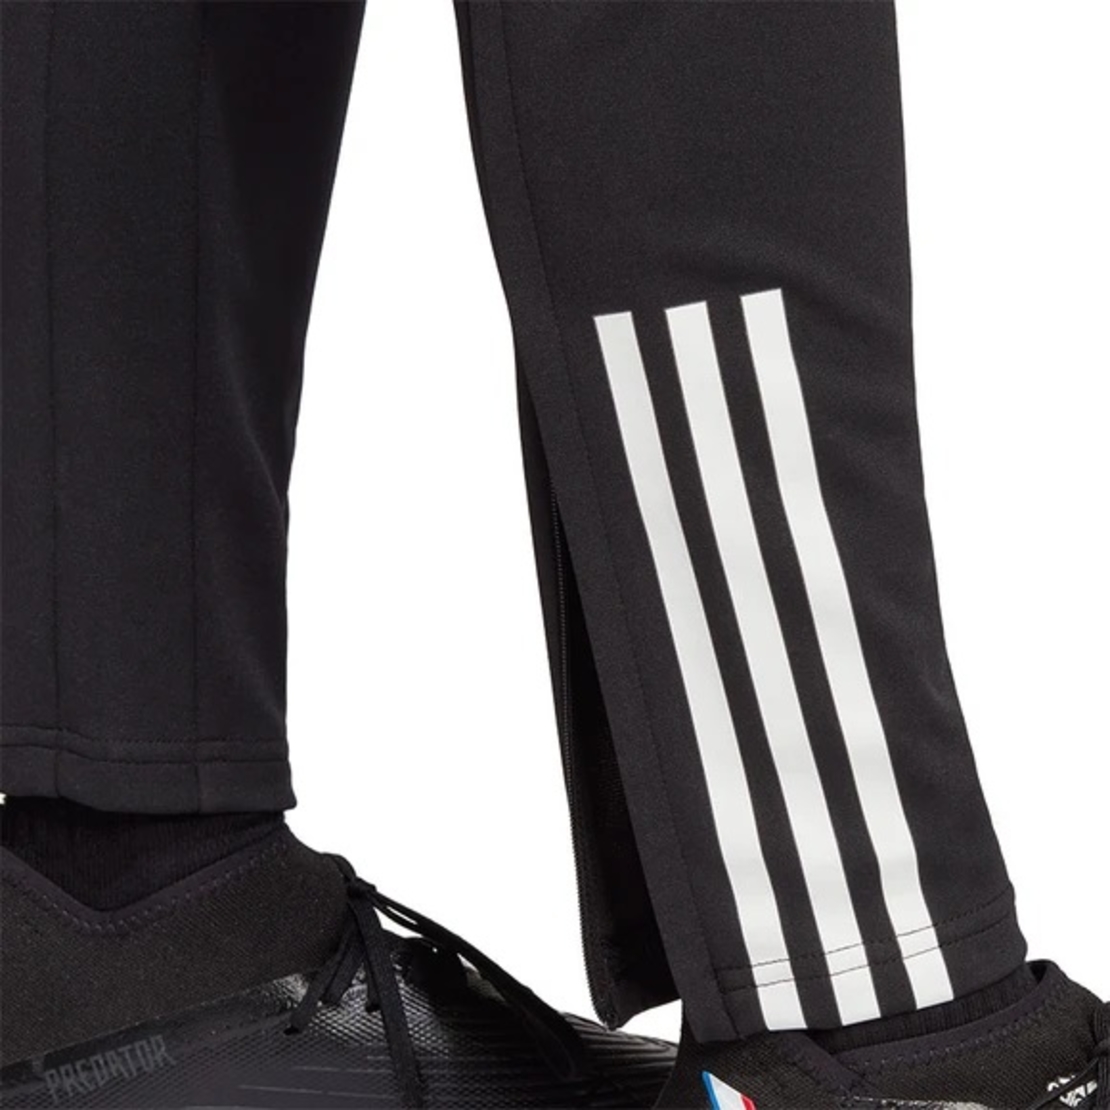 מכנס כדורגל אדידס לגבר | Adidas Tiro 23 Compatition Pant